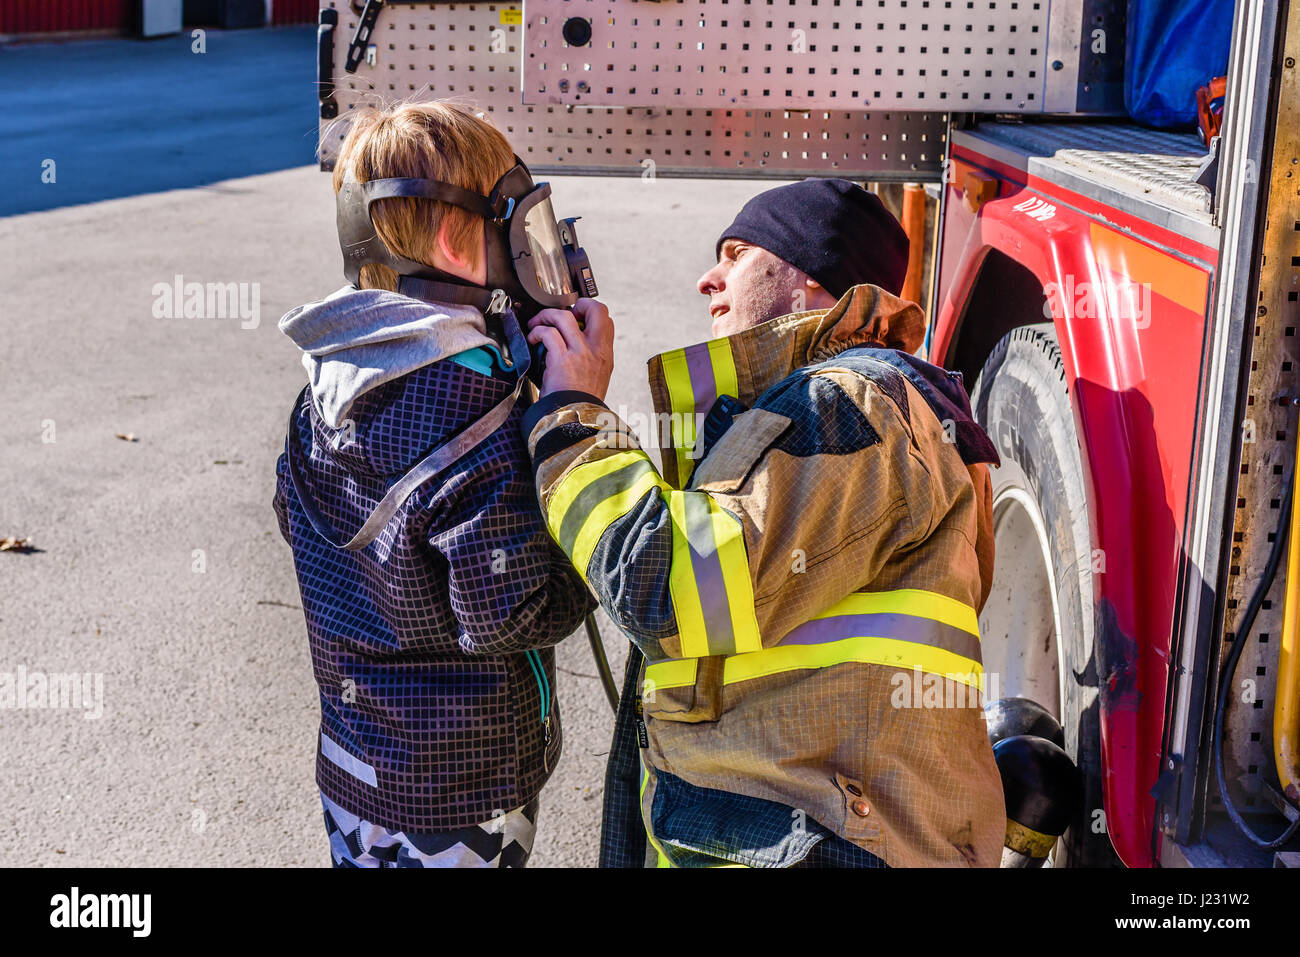 Brakne Hoby, Svezia - 22 Aprile 2017: documentario di incendio pubblici presentazione del carrello. Firefighter aiutando giovane ragazzo provare una respirazione autonoma appa Foto Stock